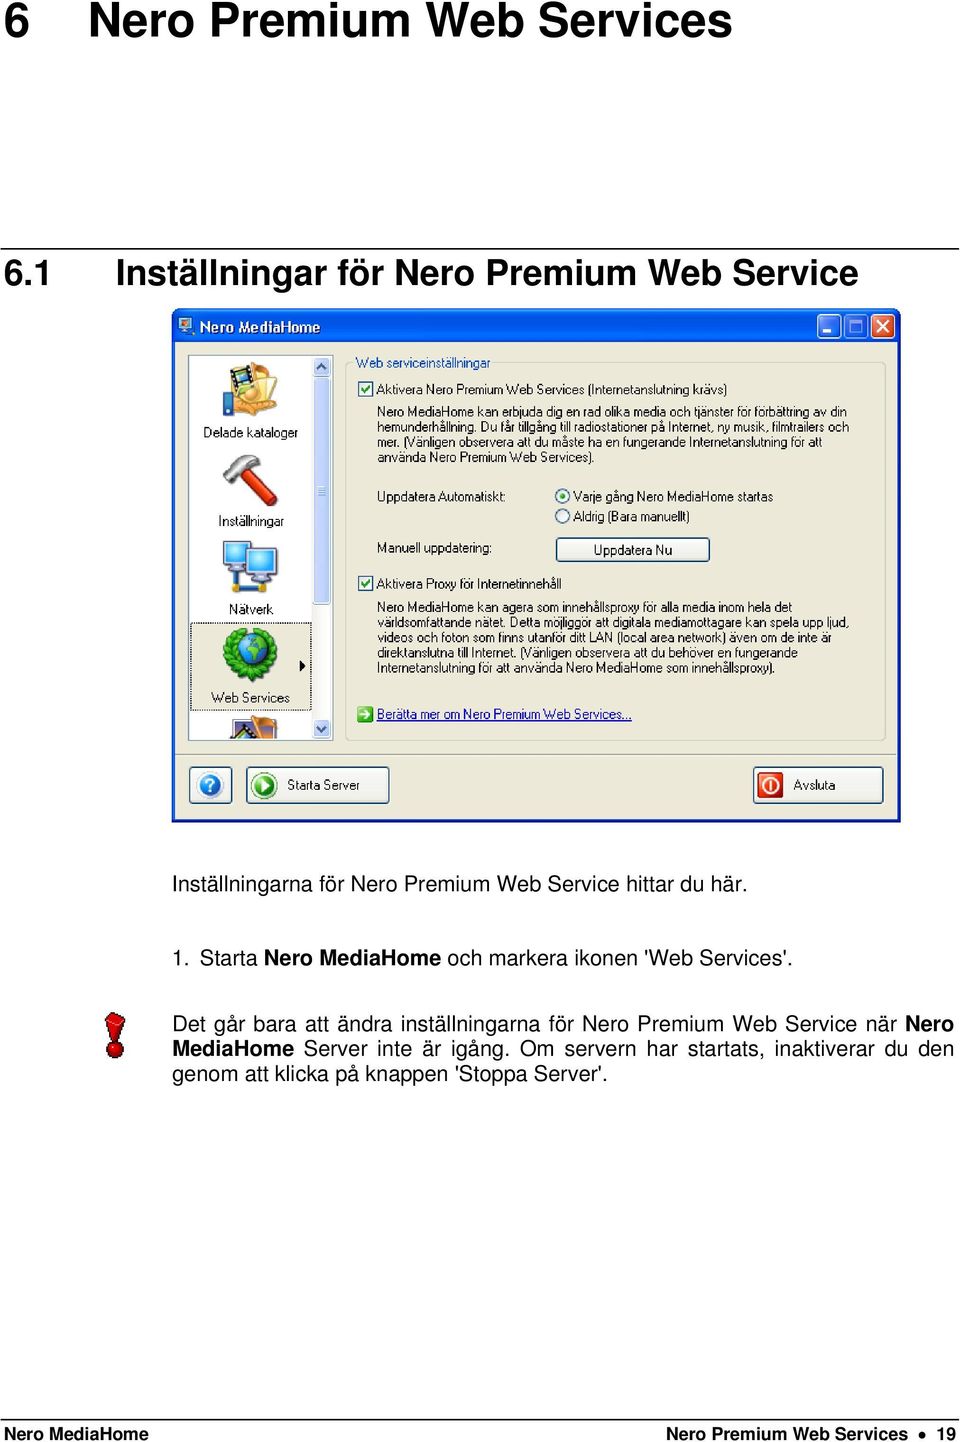 Starta Nero MediaHome och markera ikonen 'Web Services'.